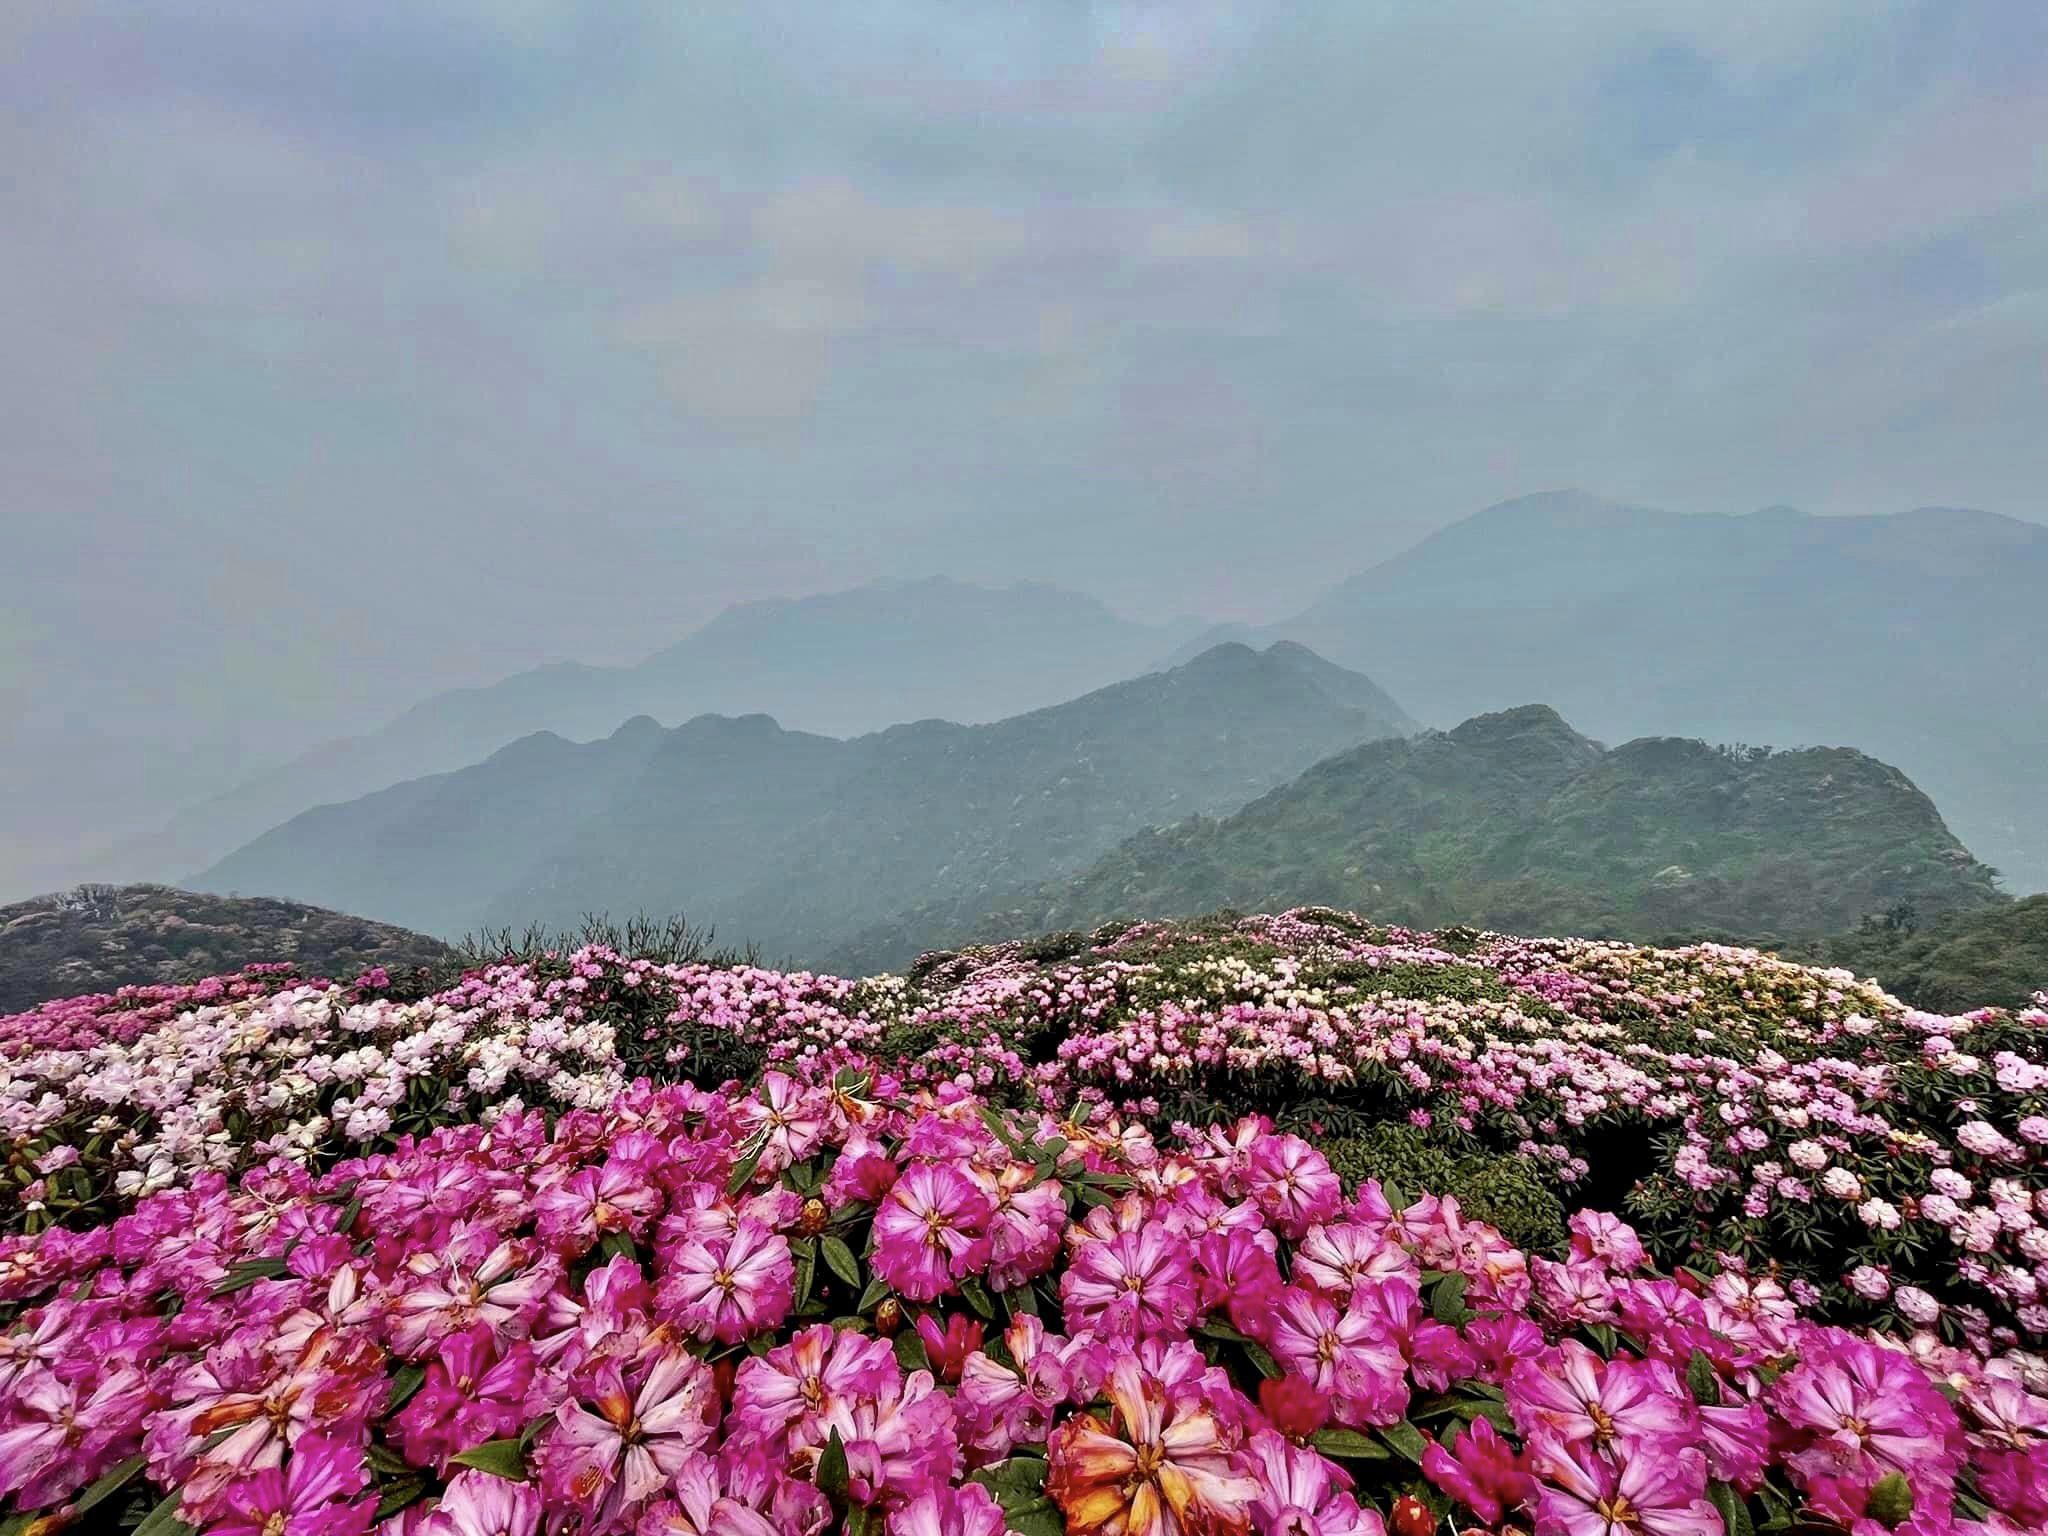 Mùa hoa đỗ quyên ở Lai Châu kéo dài từ tháng 3 đến tháng 4, năm nay hoa nở đẹp và nhiều nhất rơi vào nửa cuối tháng 3. Trên địa bàn tỉnh Lai Châu có 6 đỉnh núi cao, nhiều hoa đỗ quyên với đủ chủng loại màu sắc. Tuy nhiên, nơi mệnh danh là thiên đường hoa đỗ quyên là núi Putaleng ở huyện Tam Đường.